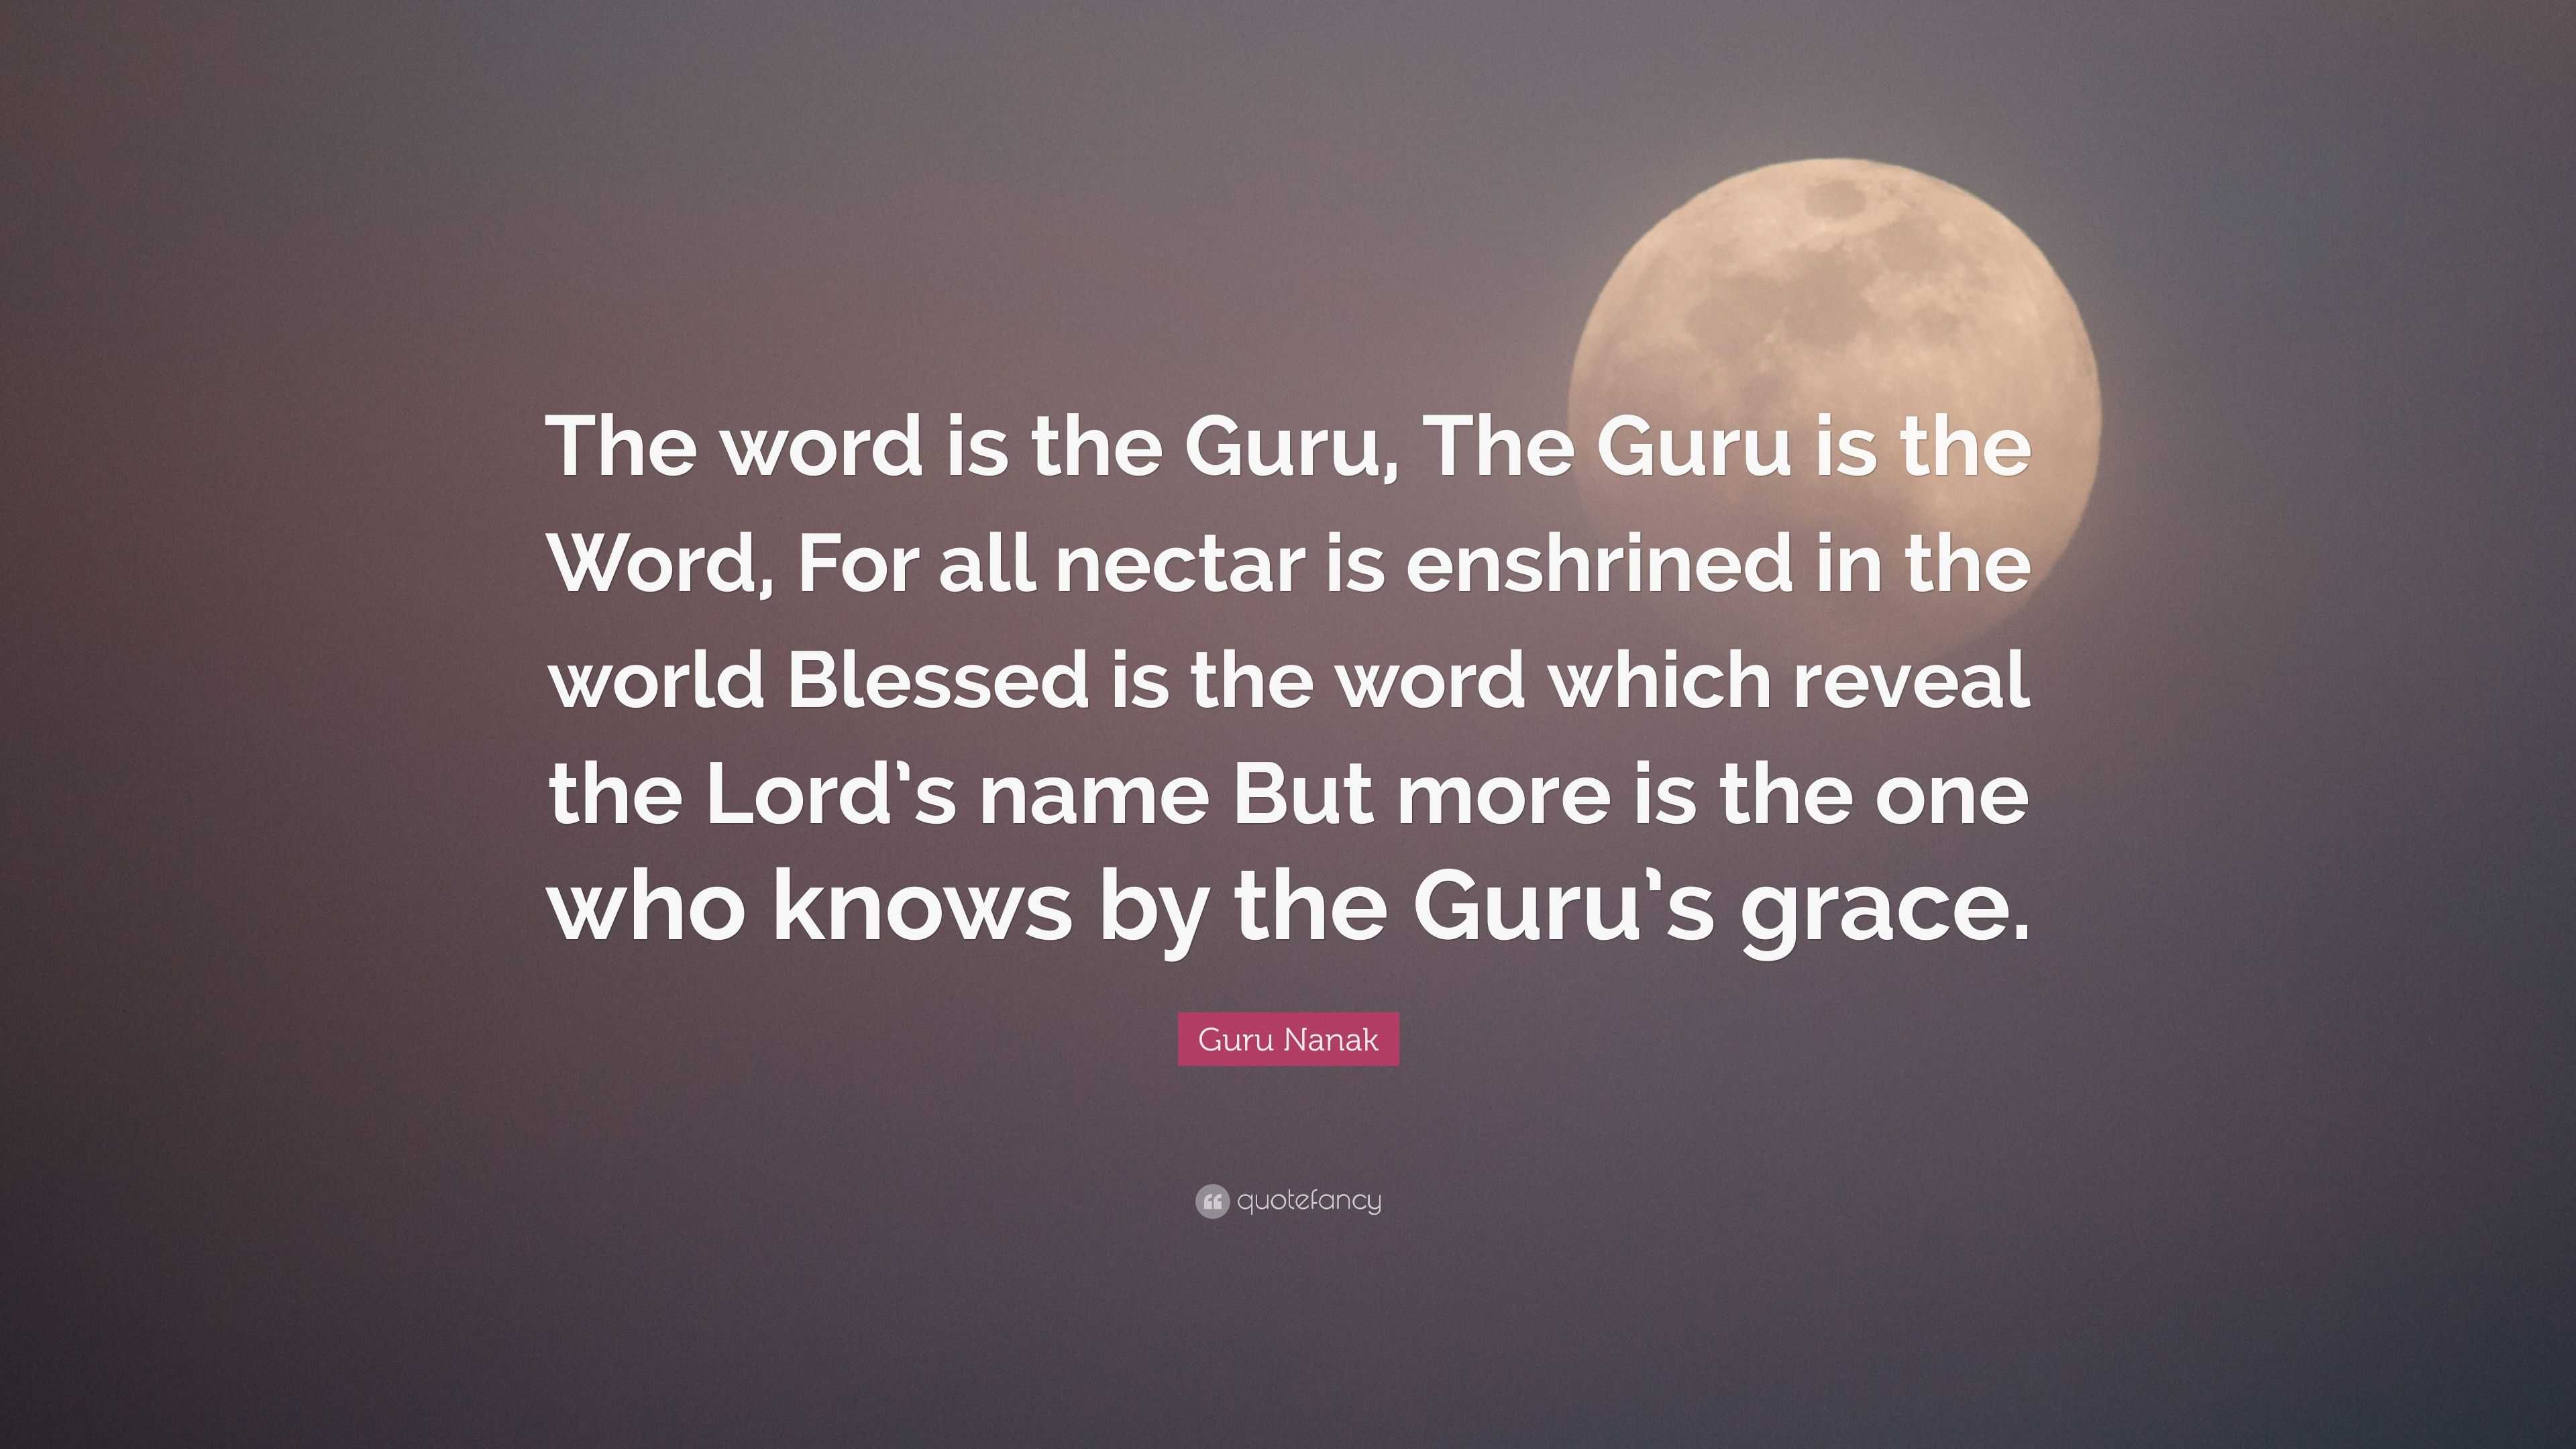 Guru Nanak Quote: “The word is the Guru, The Guru is the Word, For all